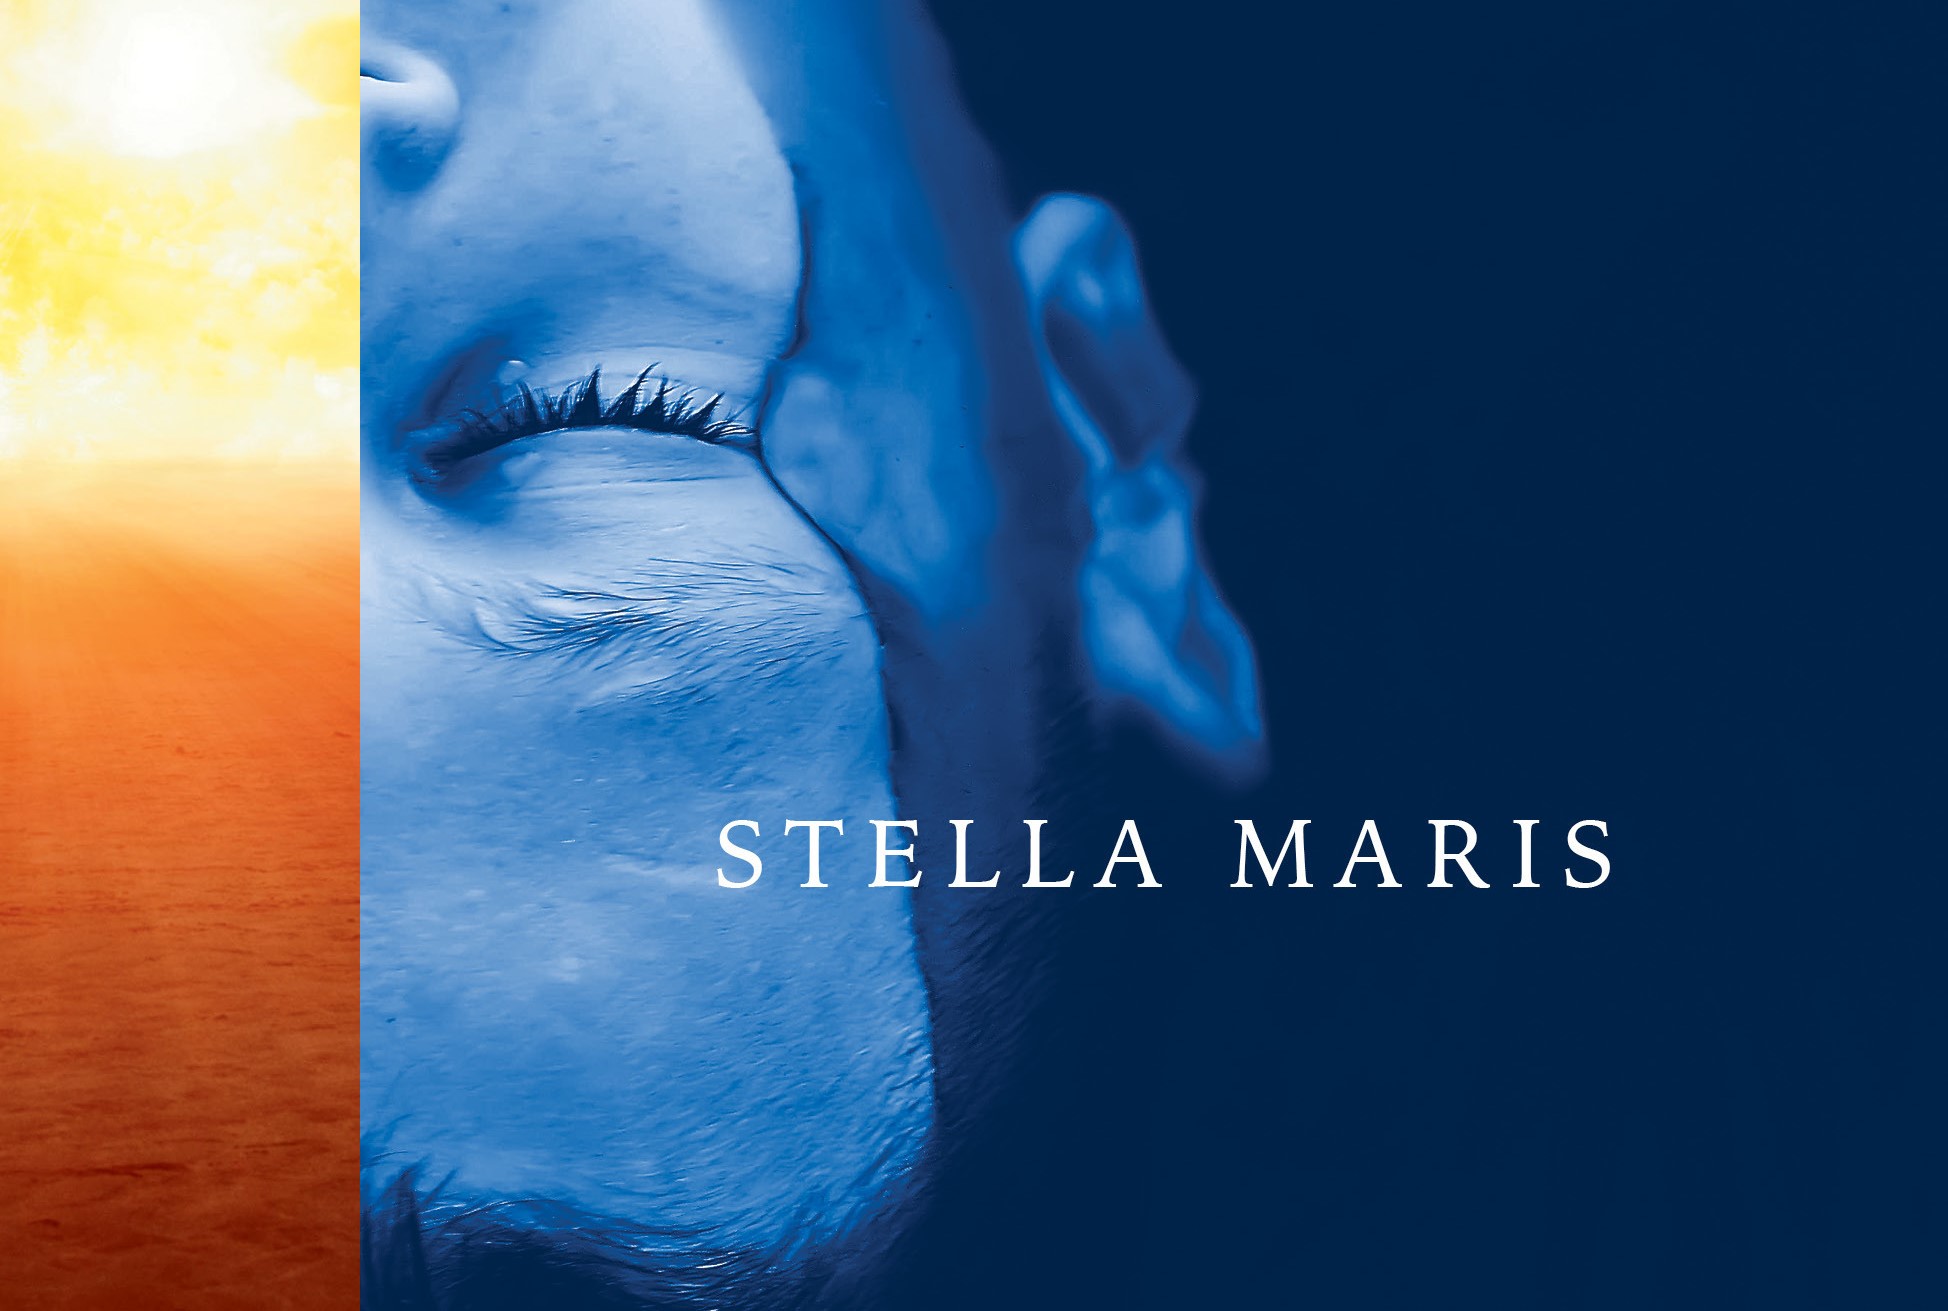 Libro Stella Maris, il romanzo sequel di The Passenger di Cormac McCarthy in uscita